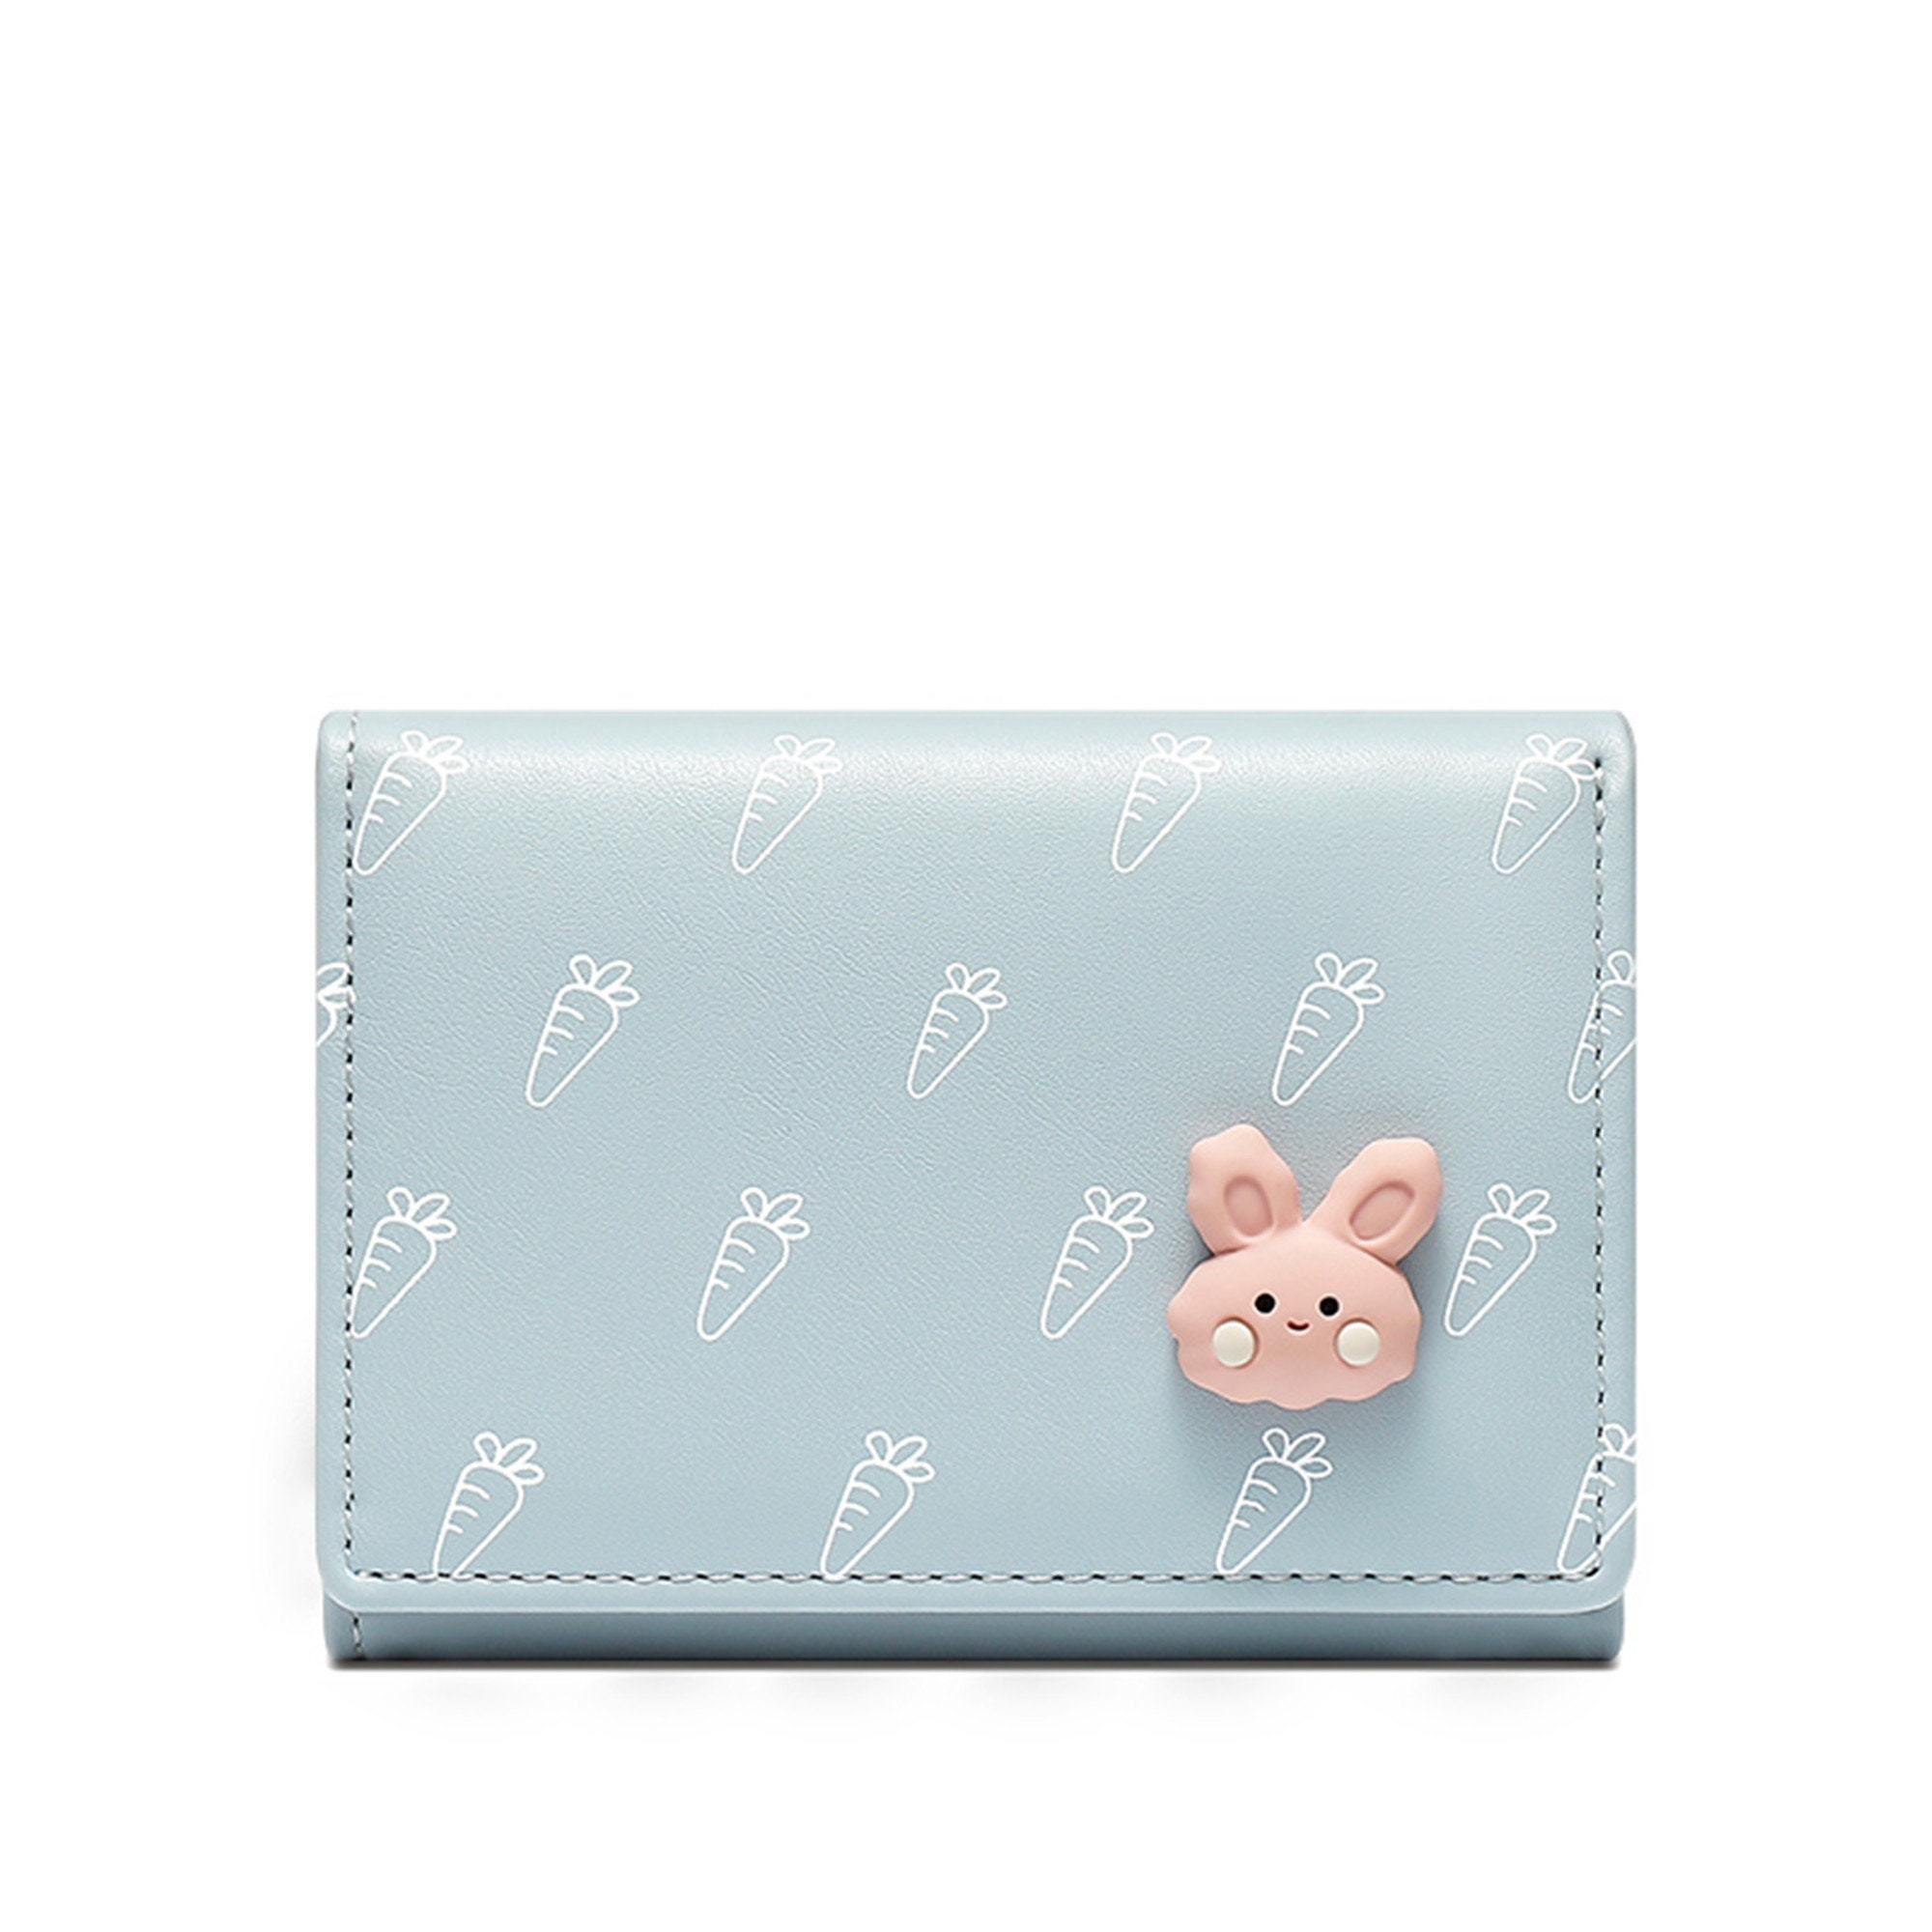 Cute Women's Carrot & Rabbit Pattern Coin Purse Short Wallet Card Holder